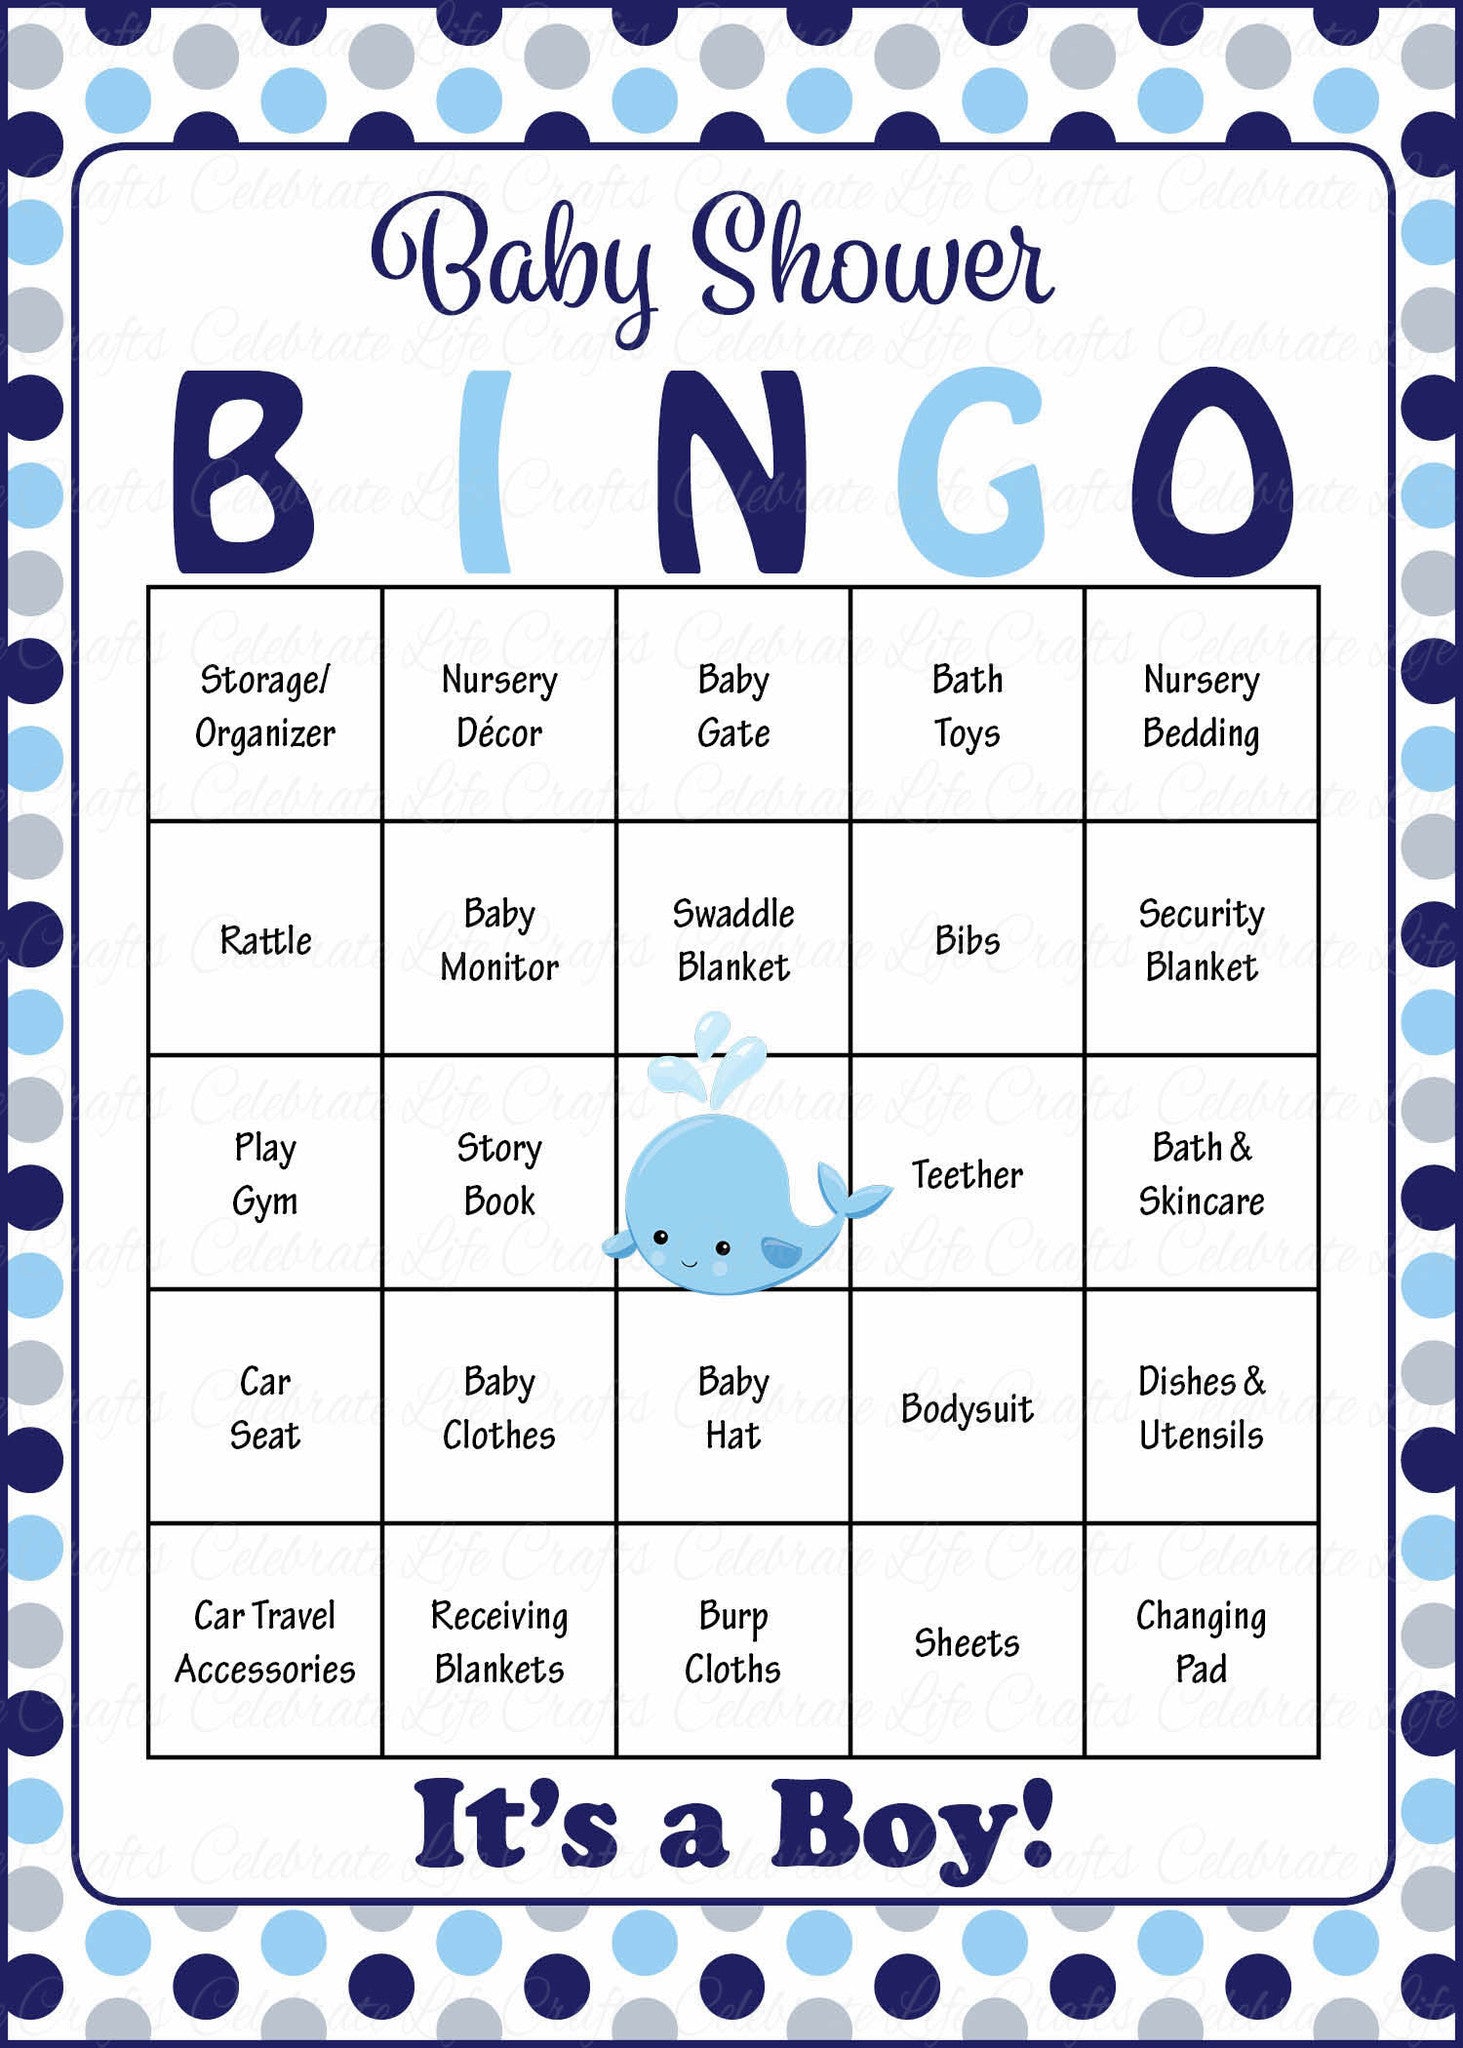 Baby shower bingo generator